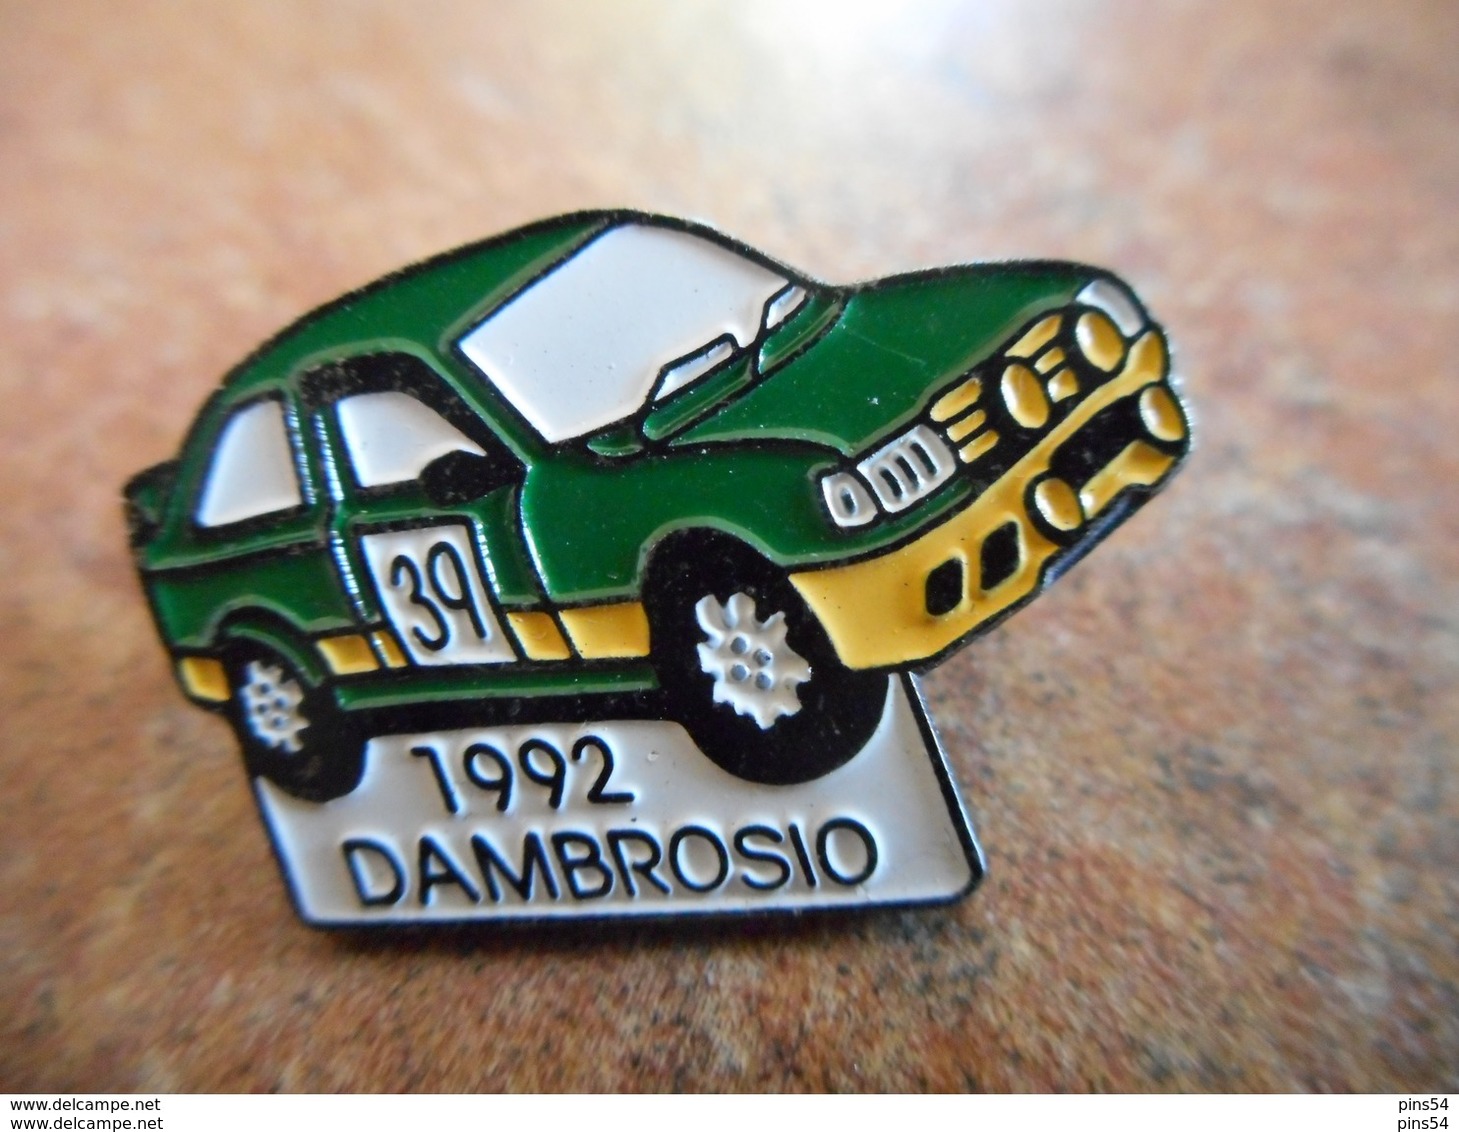 A012 -- Pin's Dambrosio 1992 - Rally